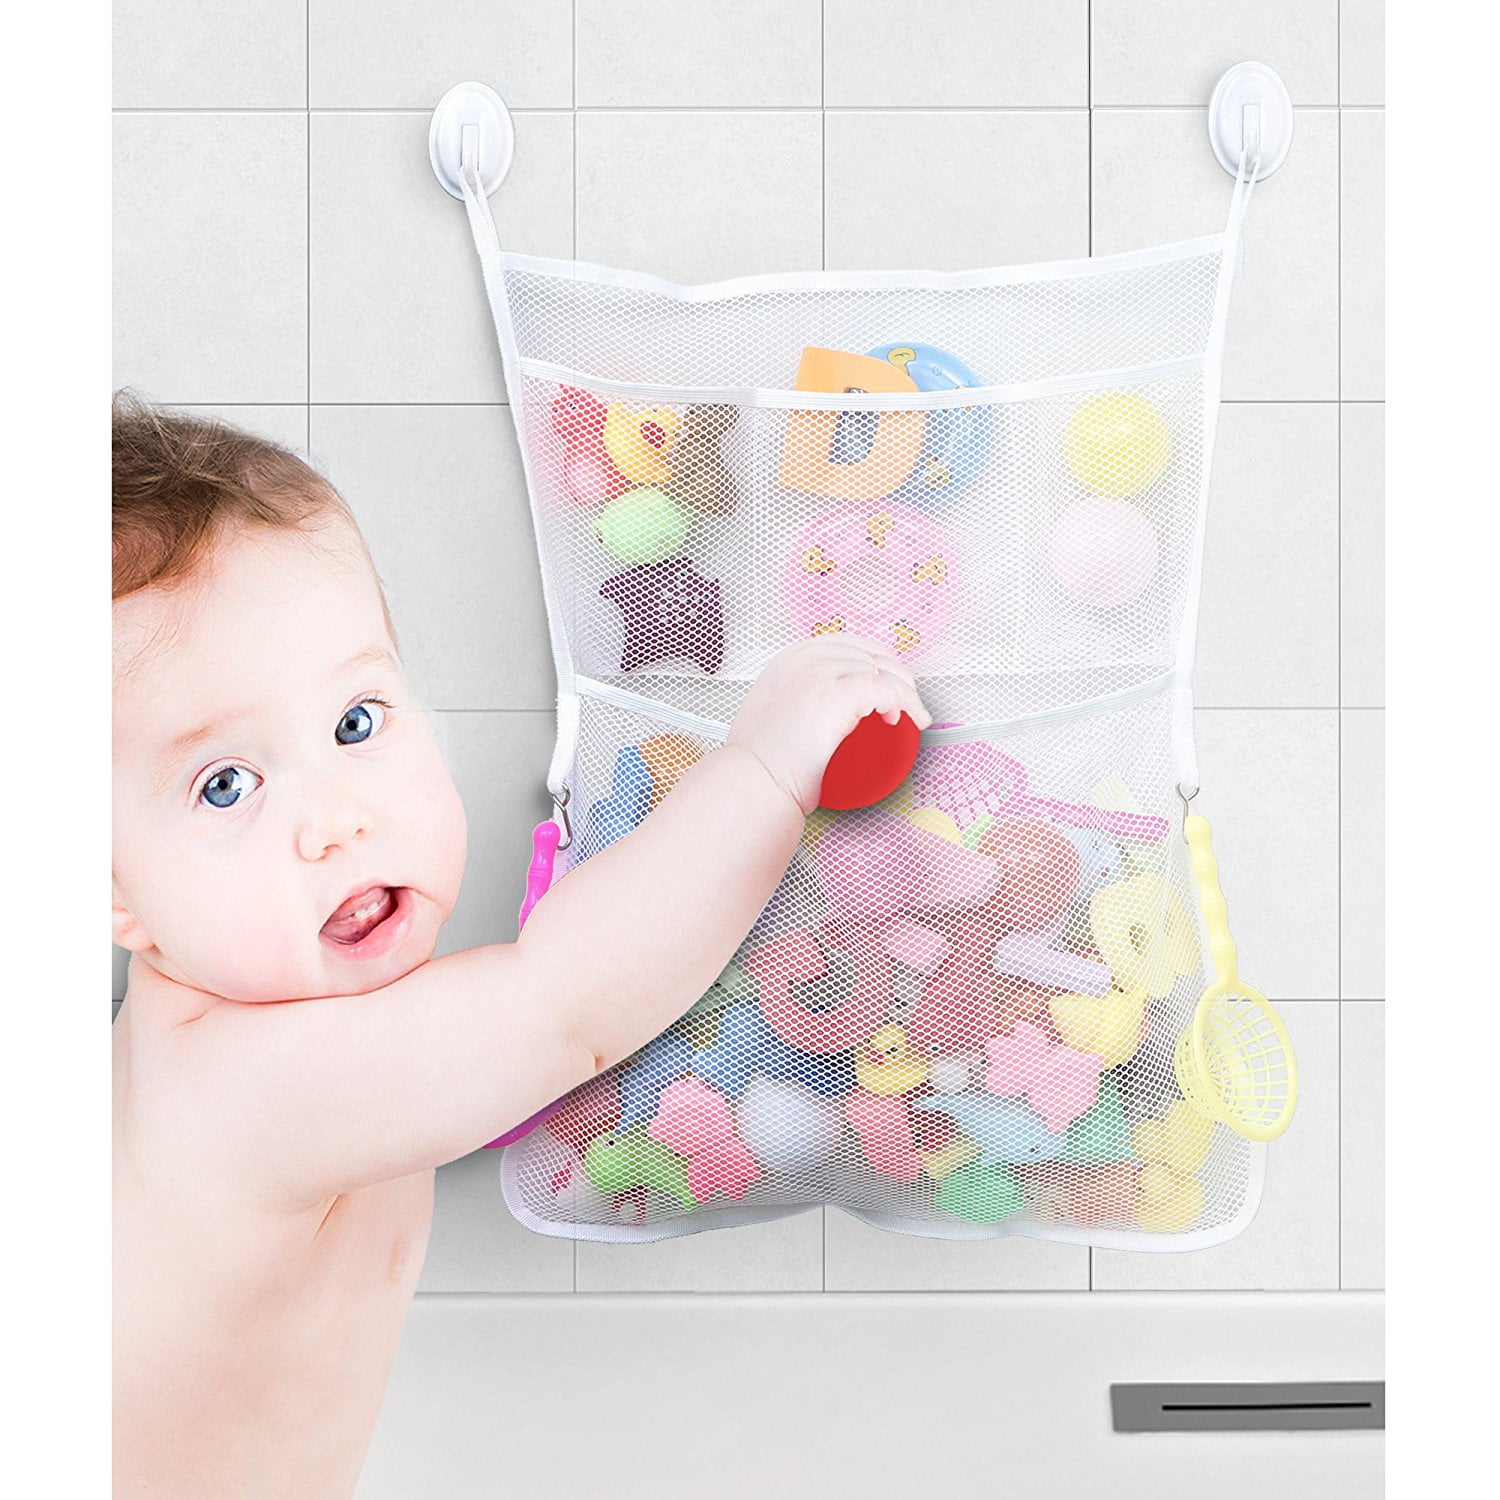 Bath Toys  Kitchen Mesh Bag Baby Shower Storage Net Holder Bathroom Organizer 